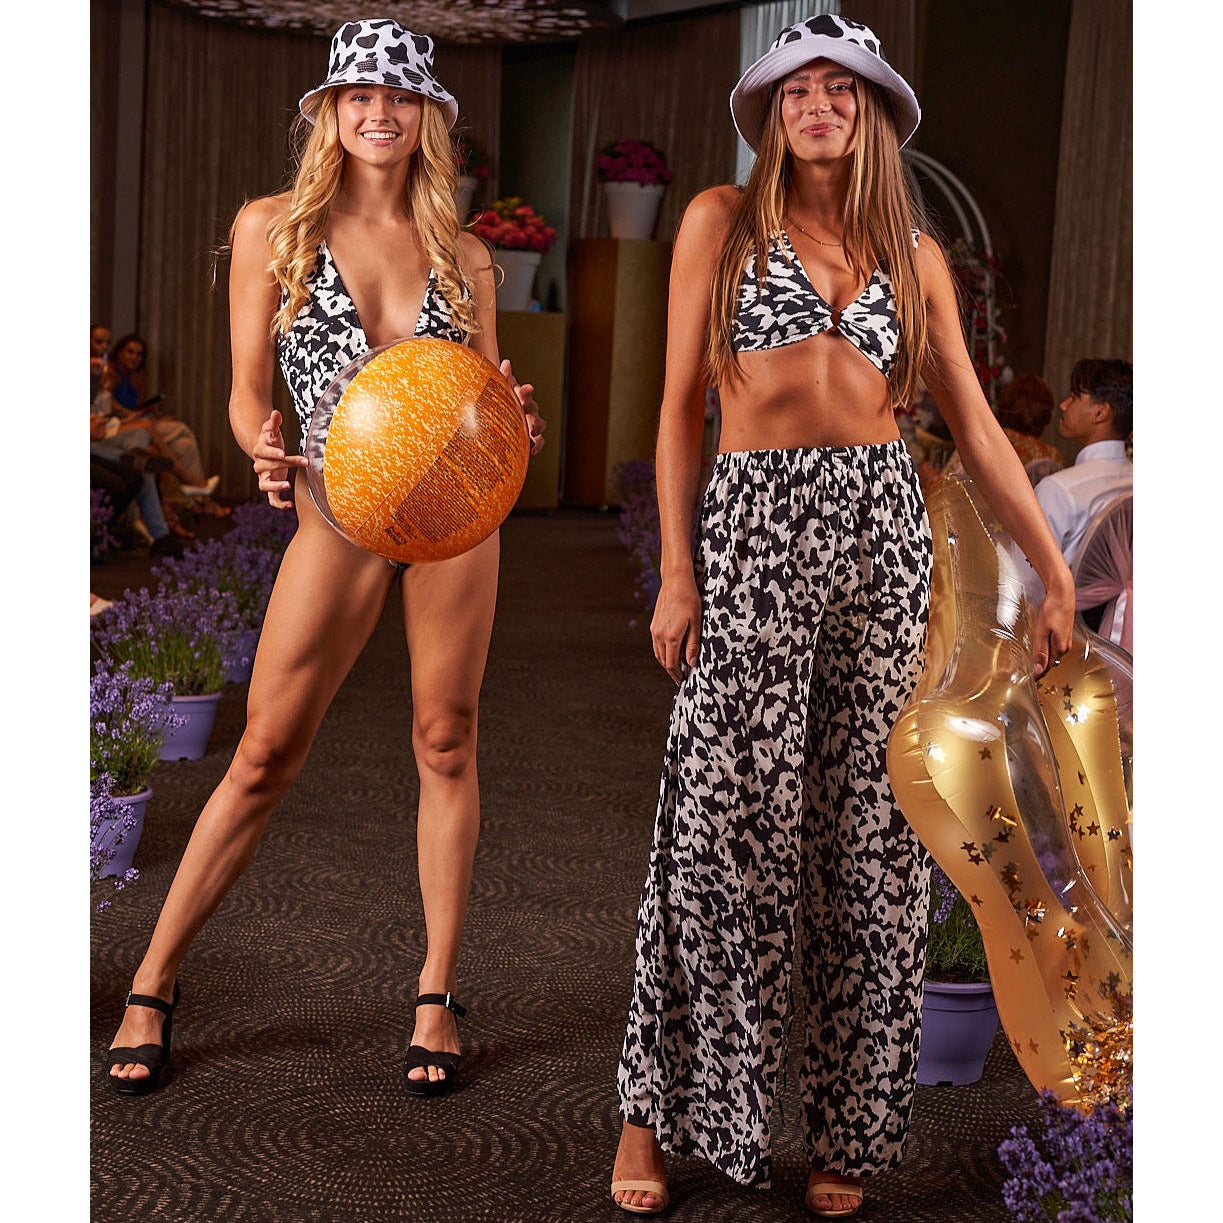 Broek | Maaji Cow - For Models and Mermaids